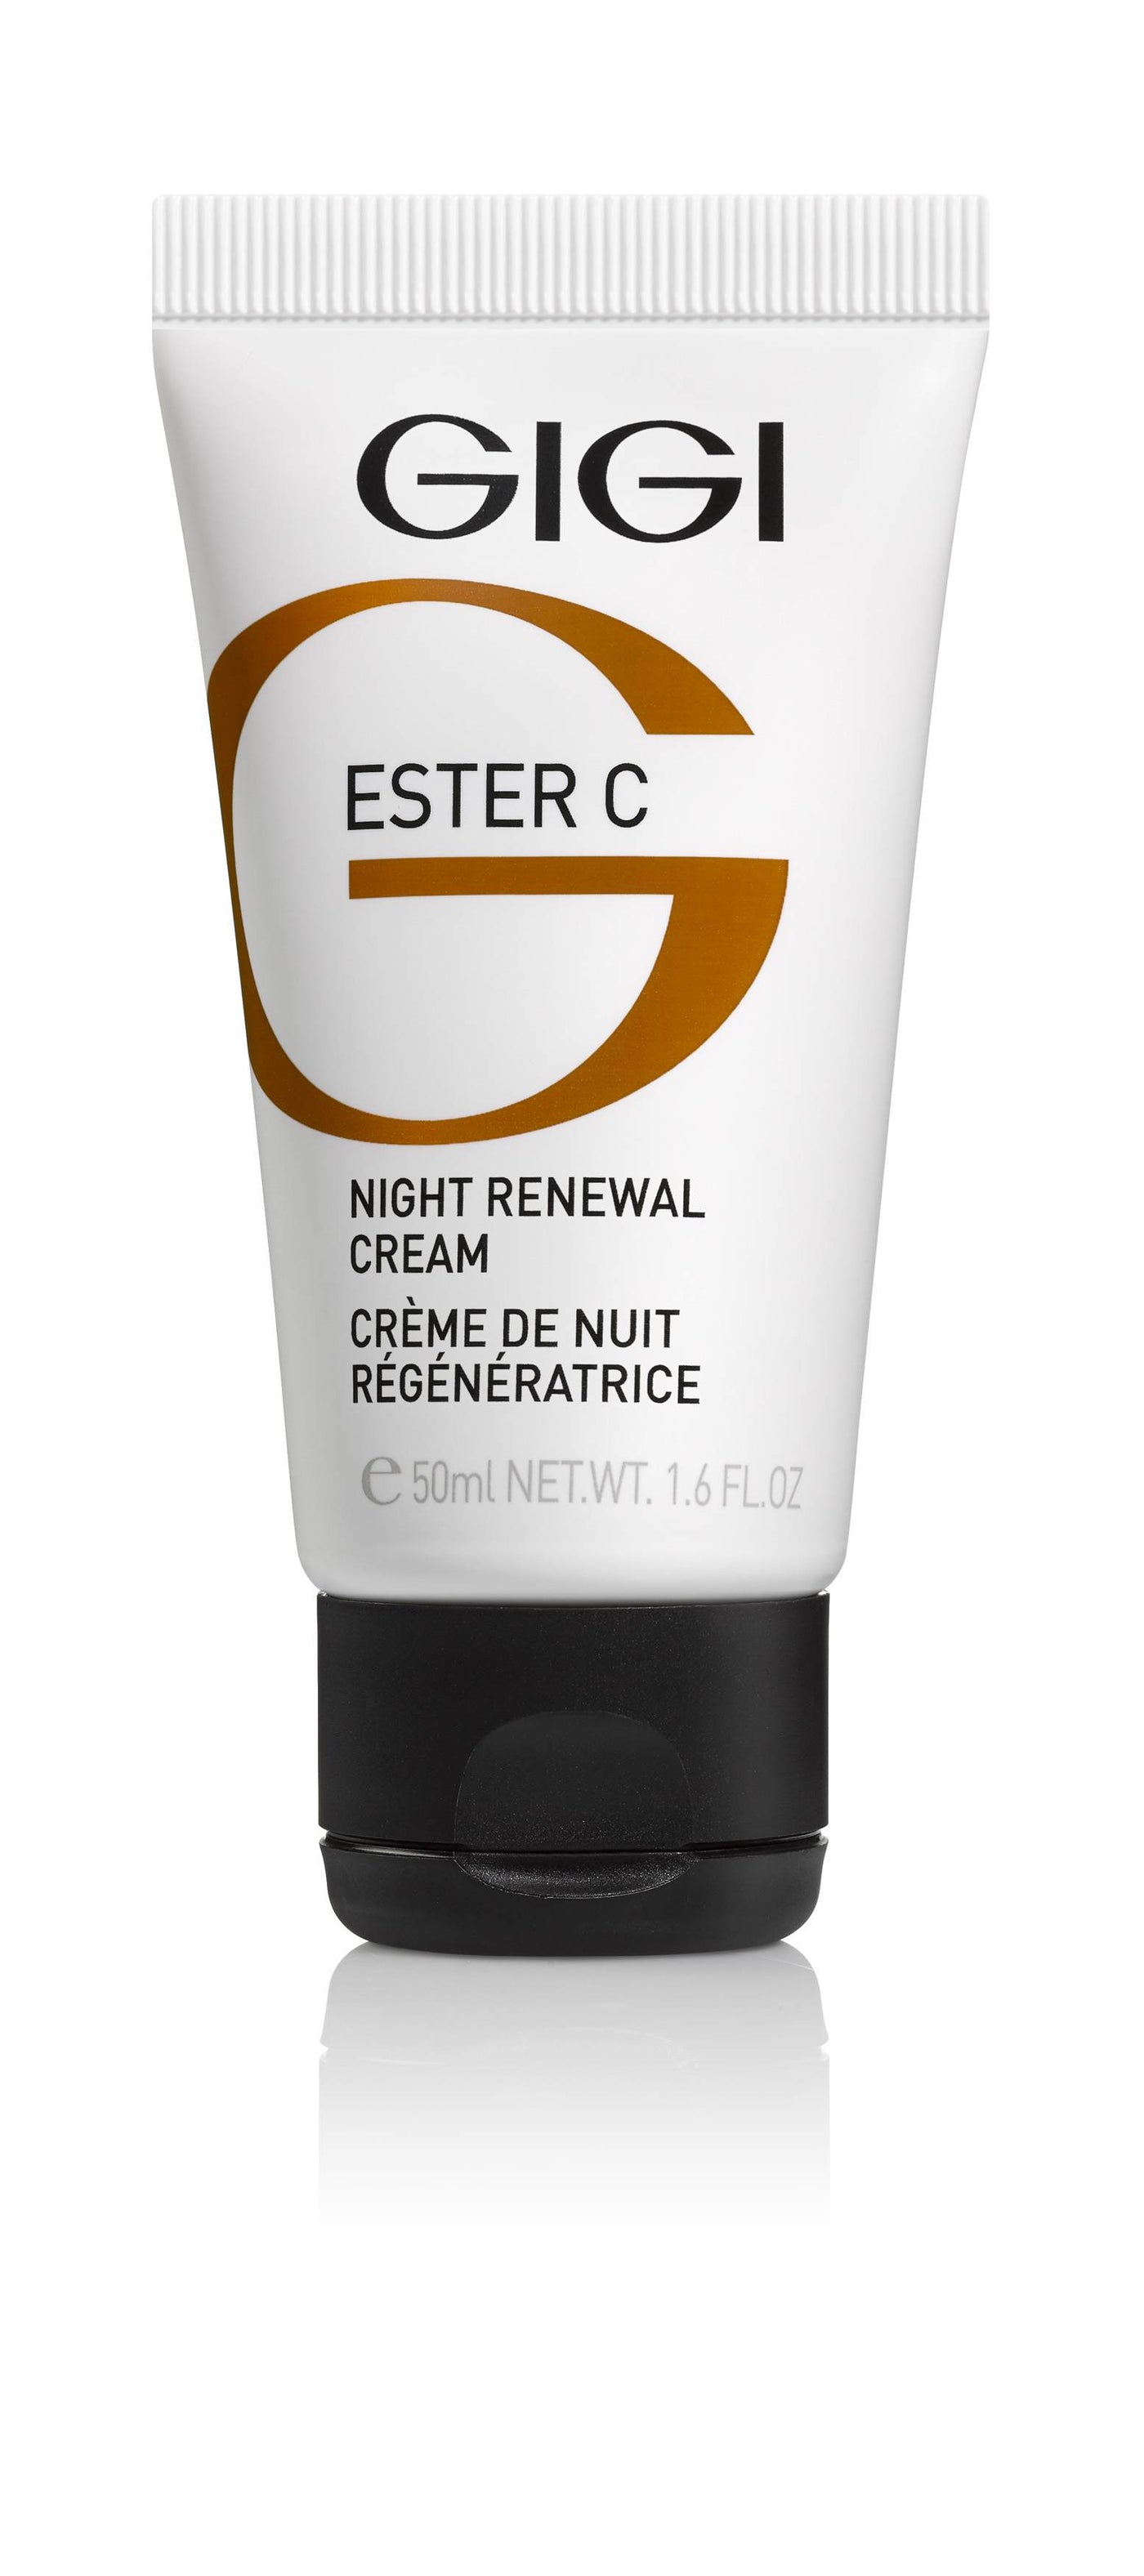 GIGI Ester C Night Renewal Cream